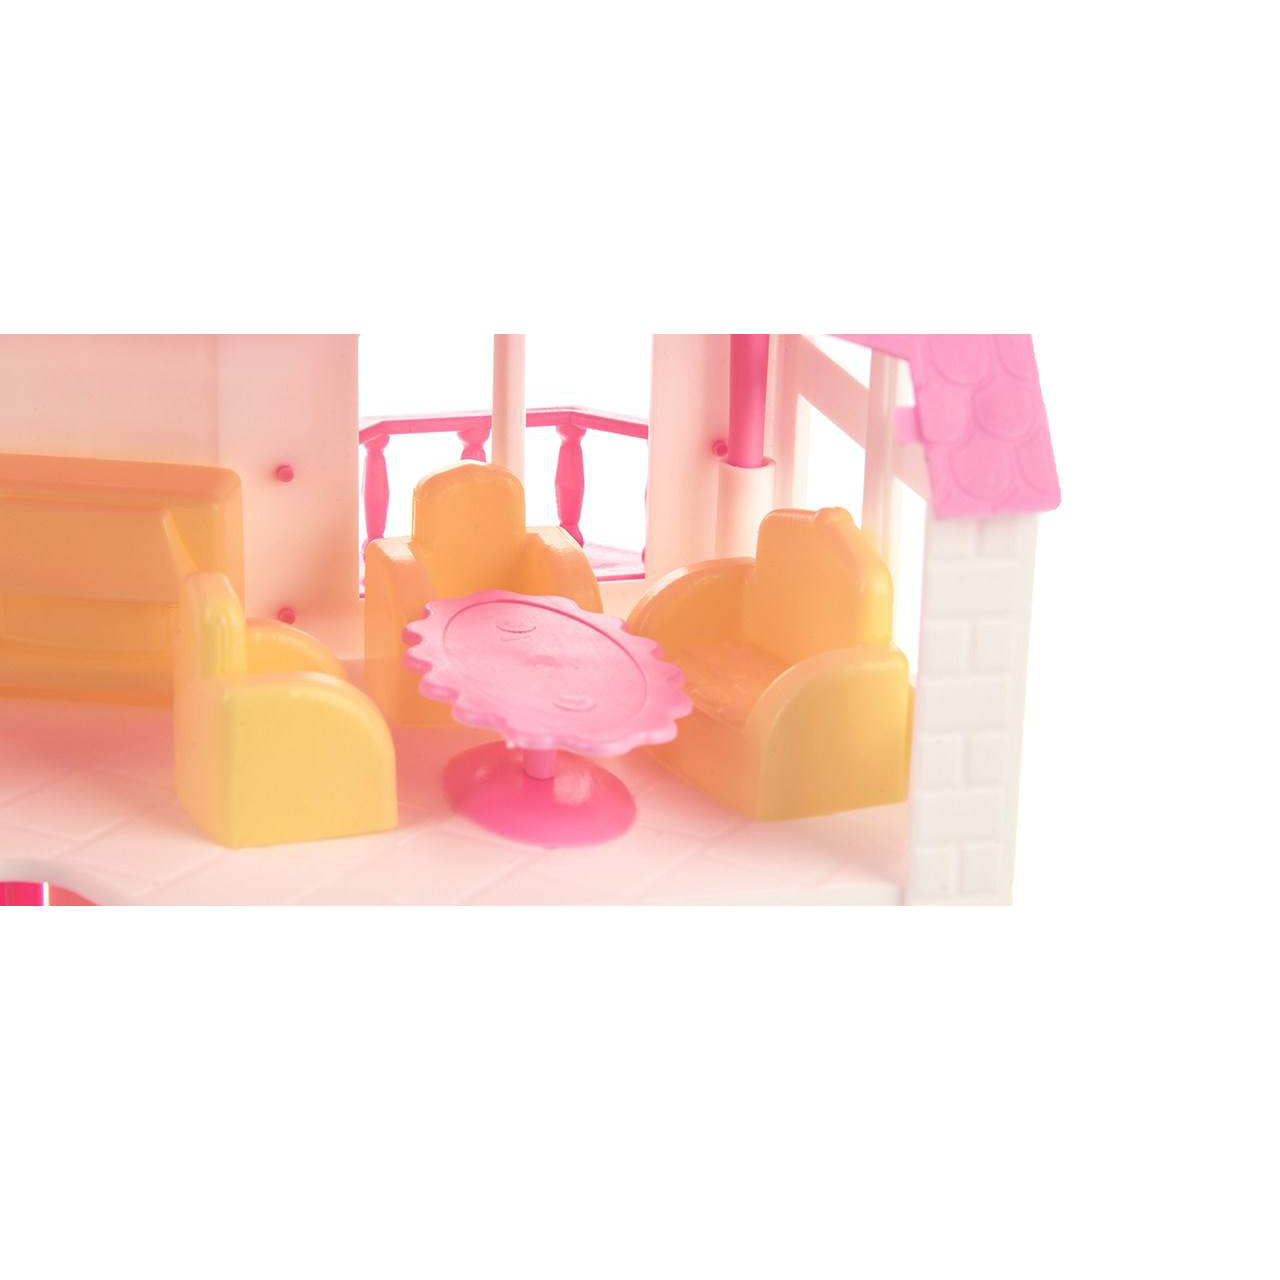 اسباب بازی خانه عروسکی مدل اینداکو main 1 6